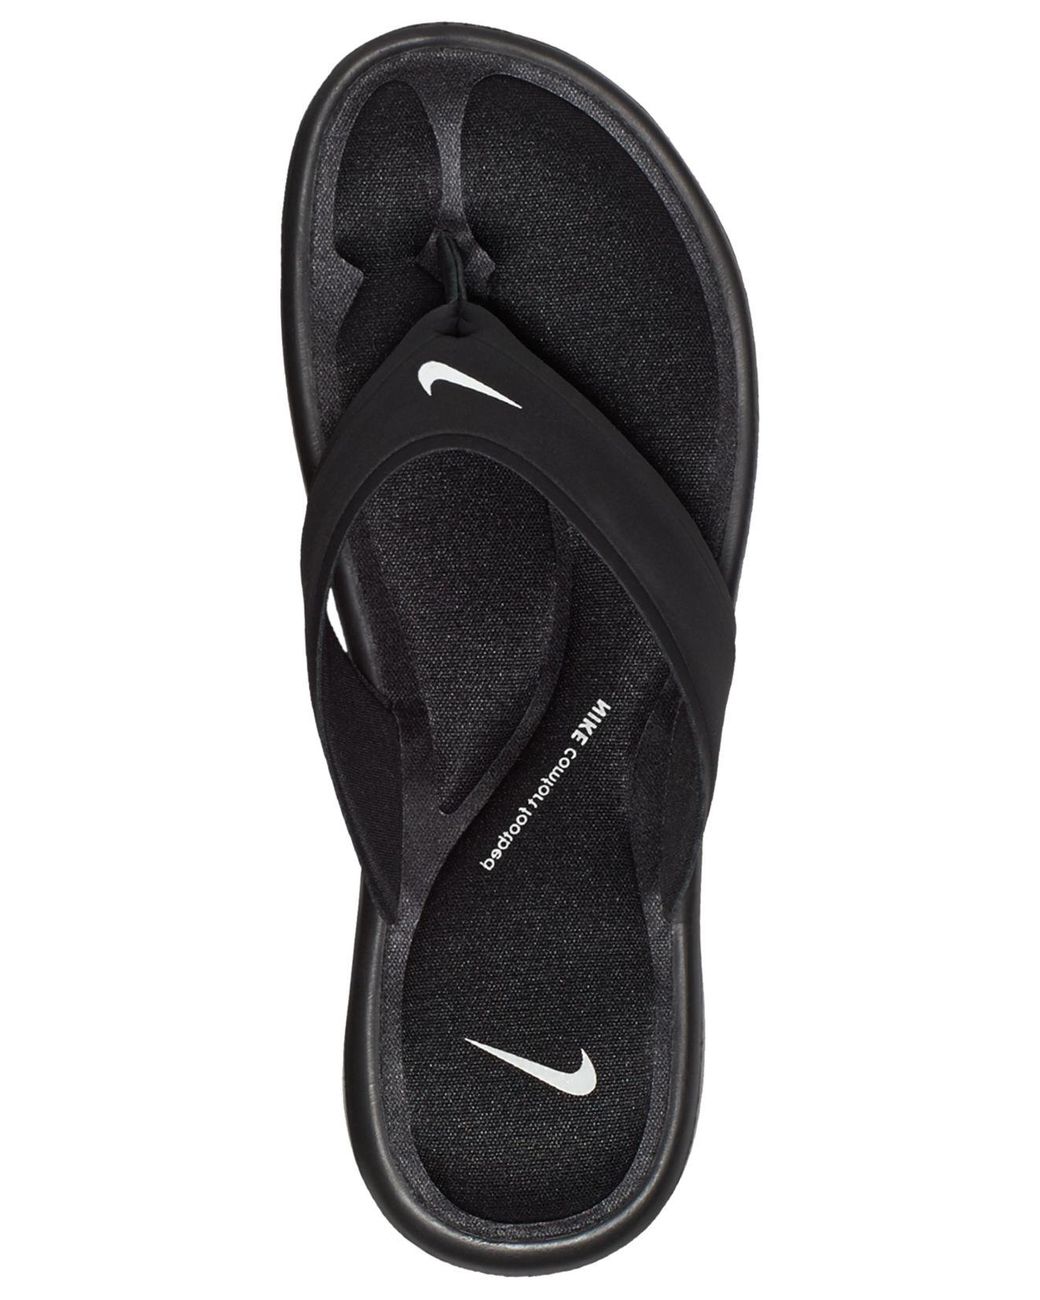 Nike Comfort Foam Footbed Slip On Flip Flop Slides Sandals Women's  Size 7 Black | eBay